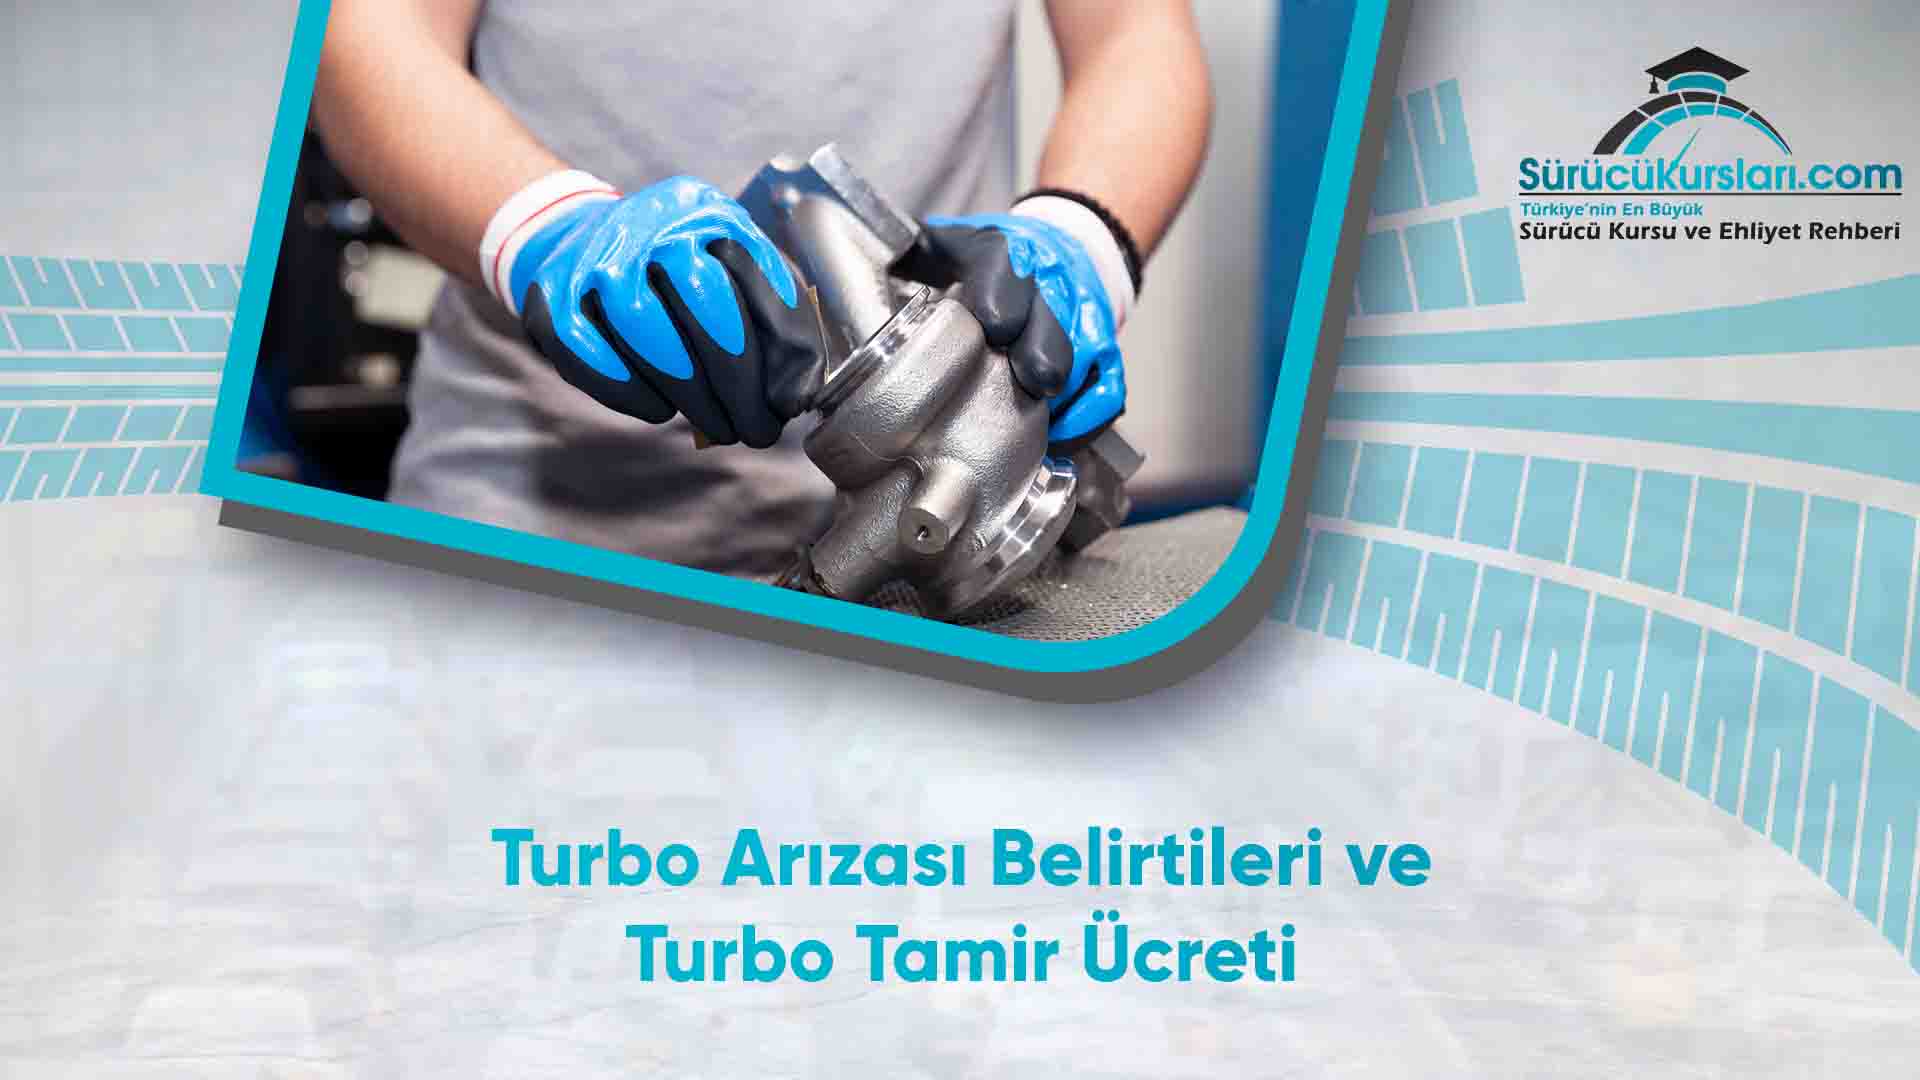 Turbo Arızası Belirtileri ve Turbo Tamir Ücreti